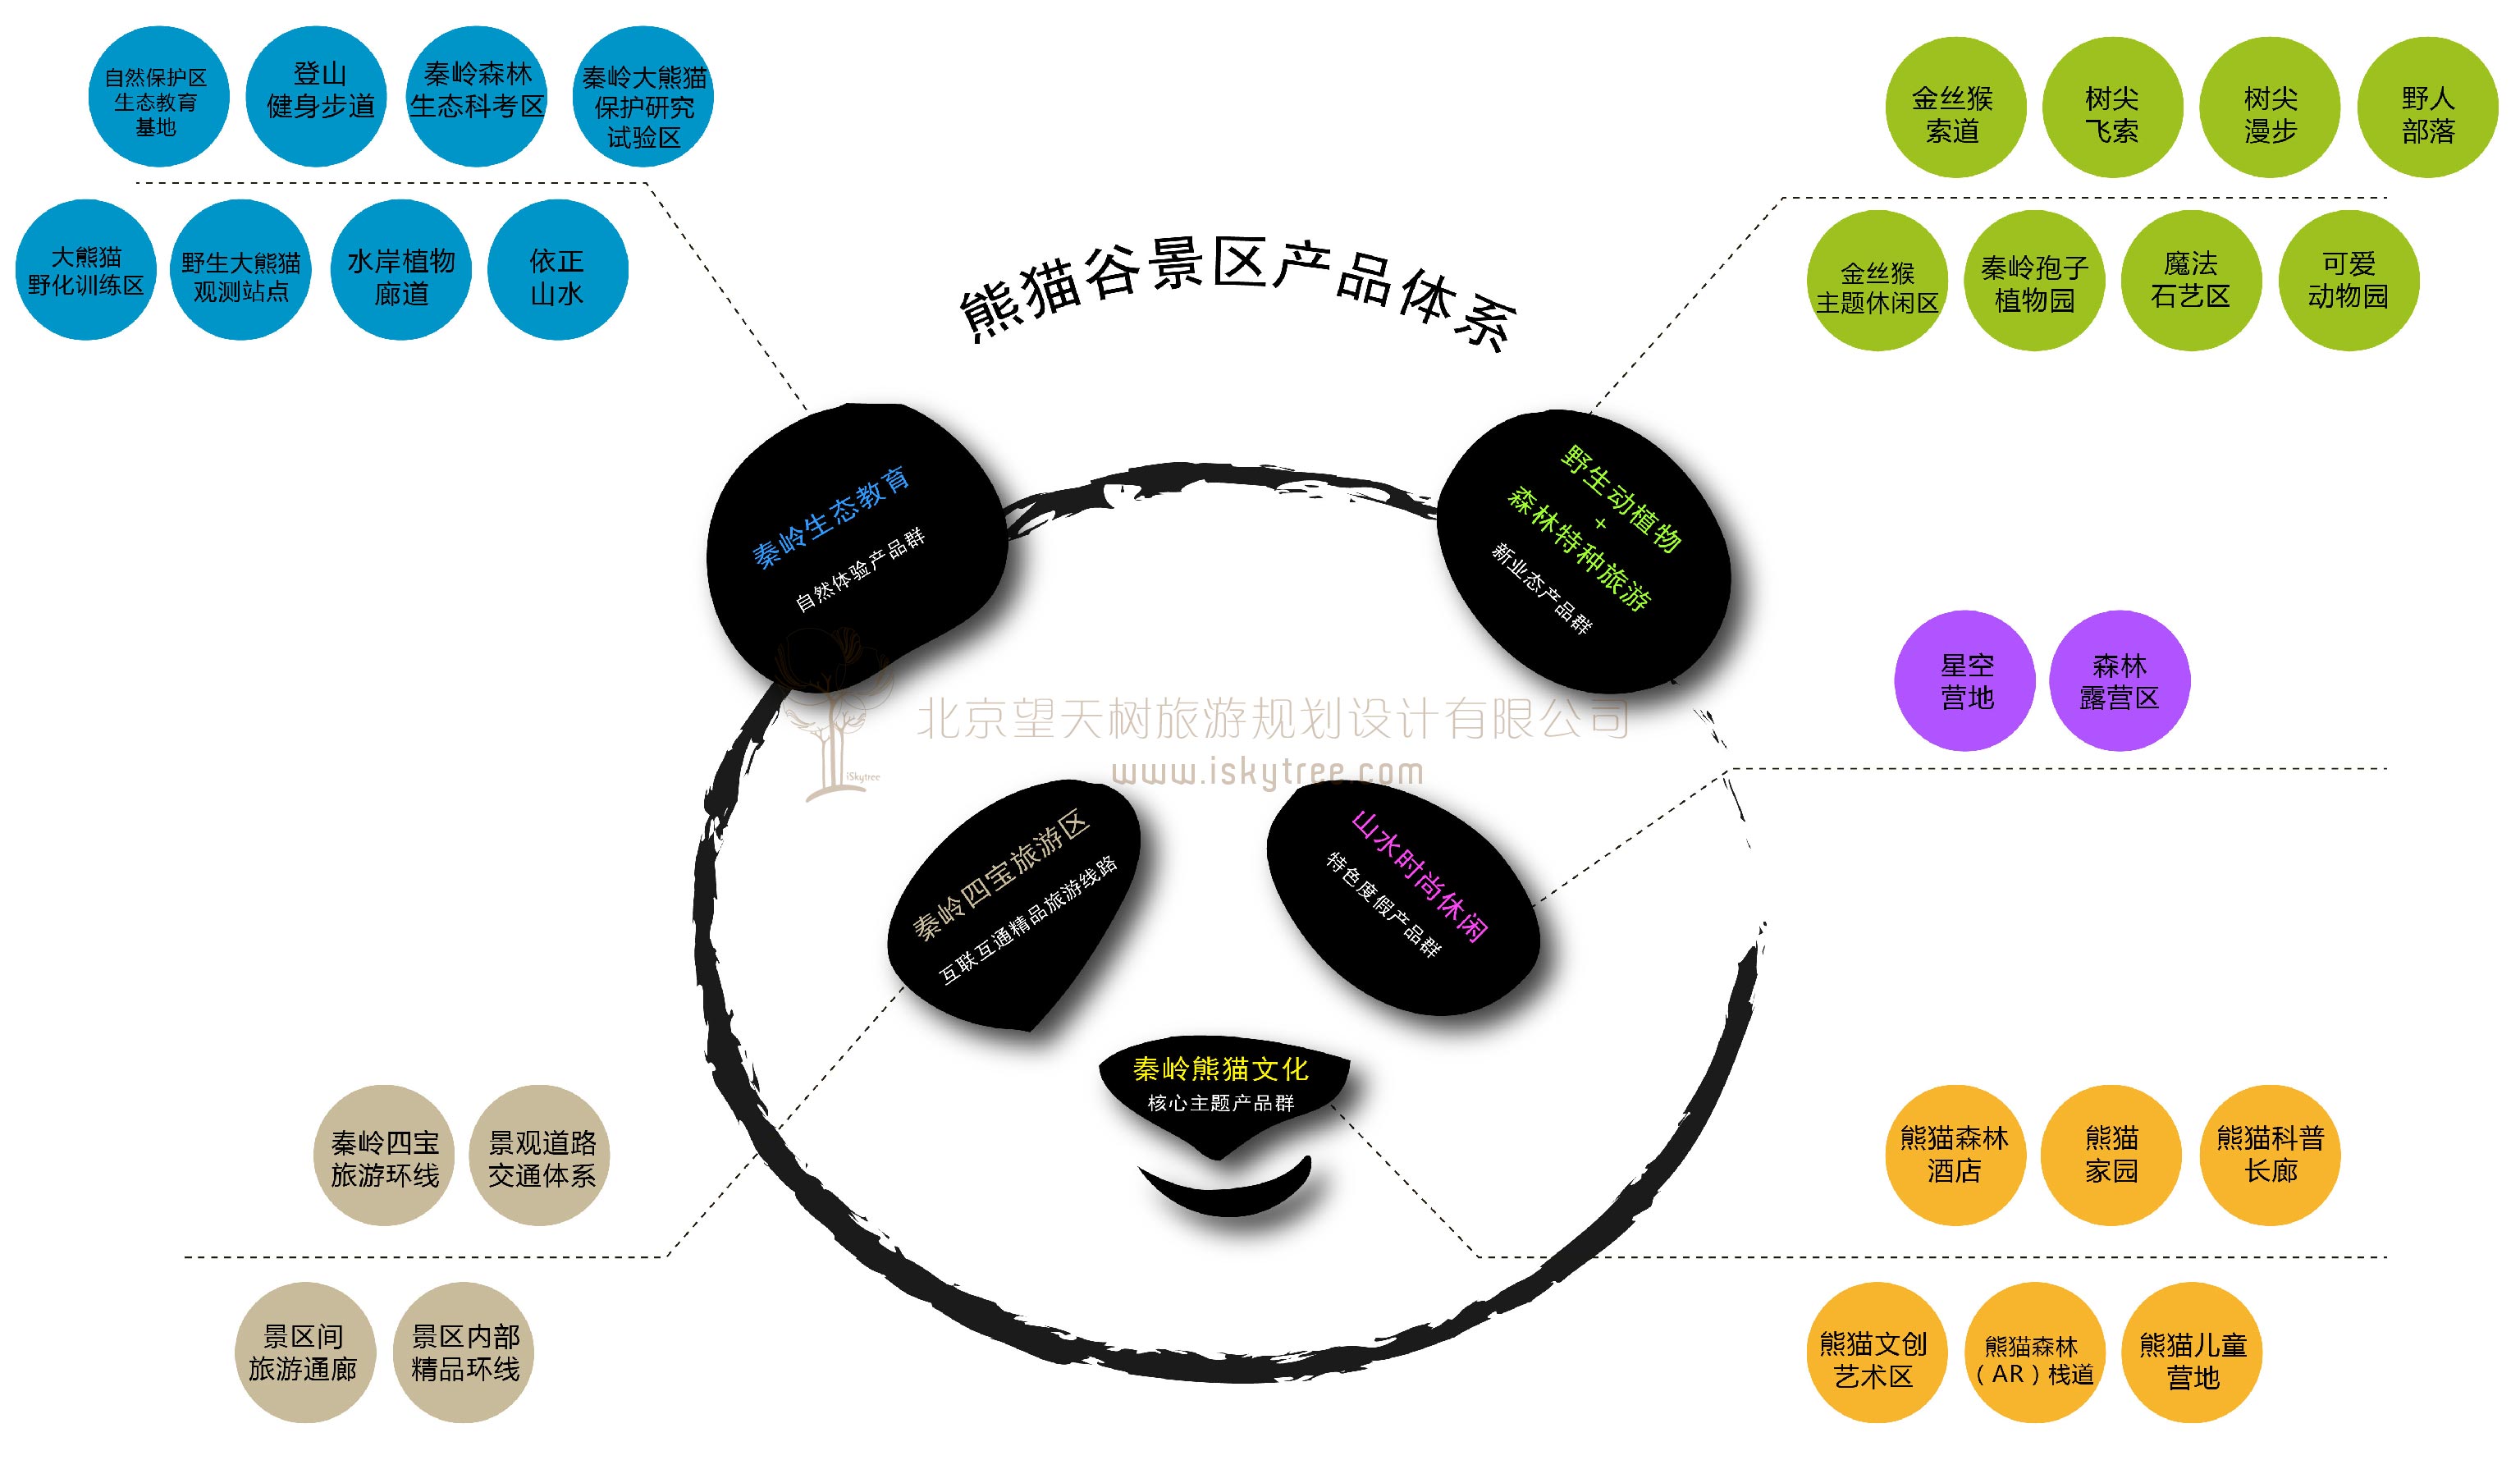 佛坪熊貓谷景區熊貓主題旅游產品體系設計